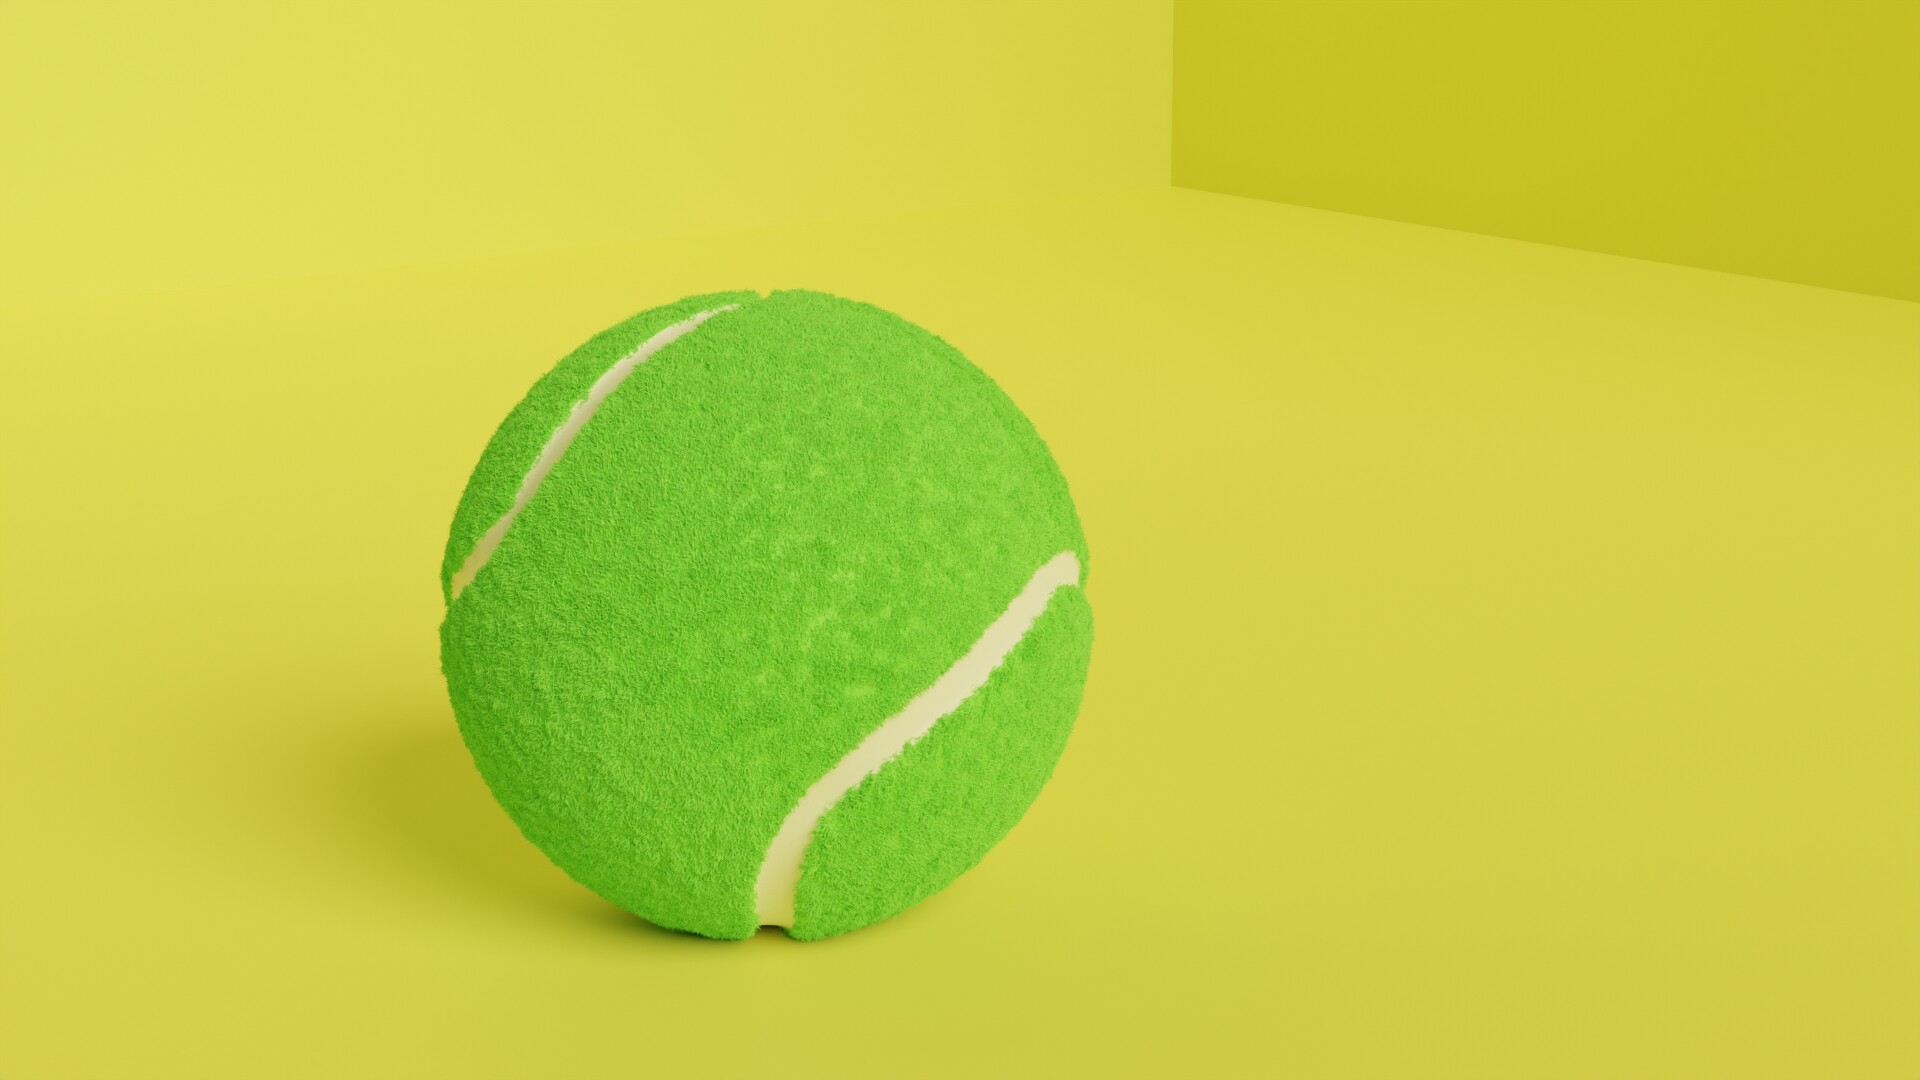 ArtStation - Tennis Ball